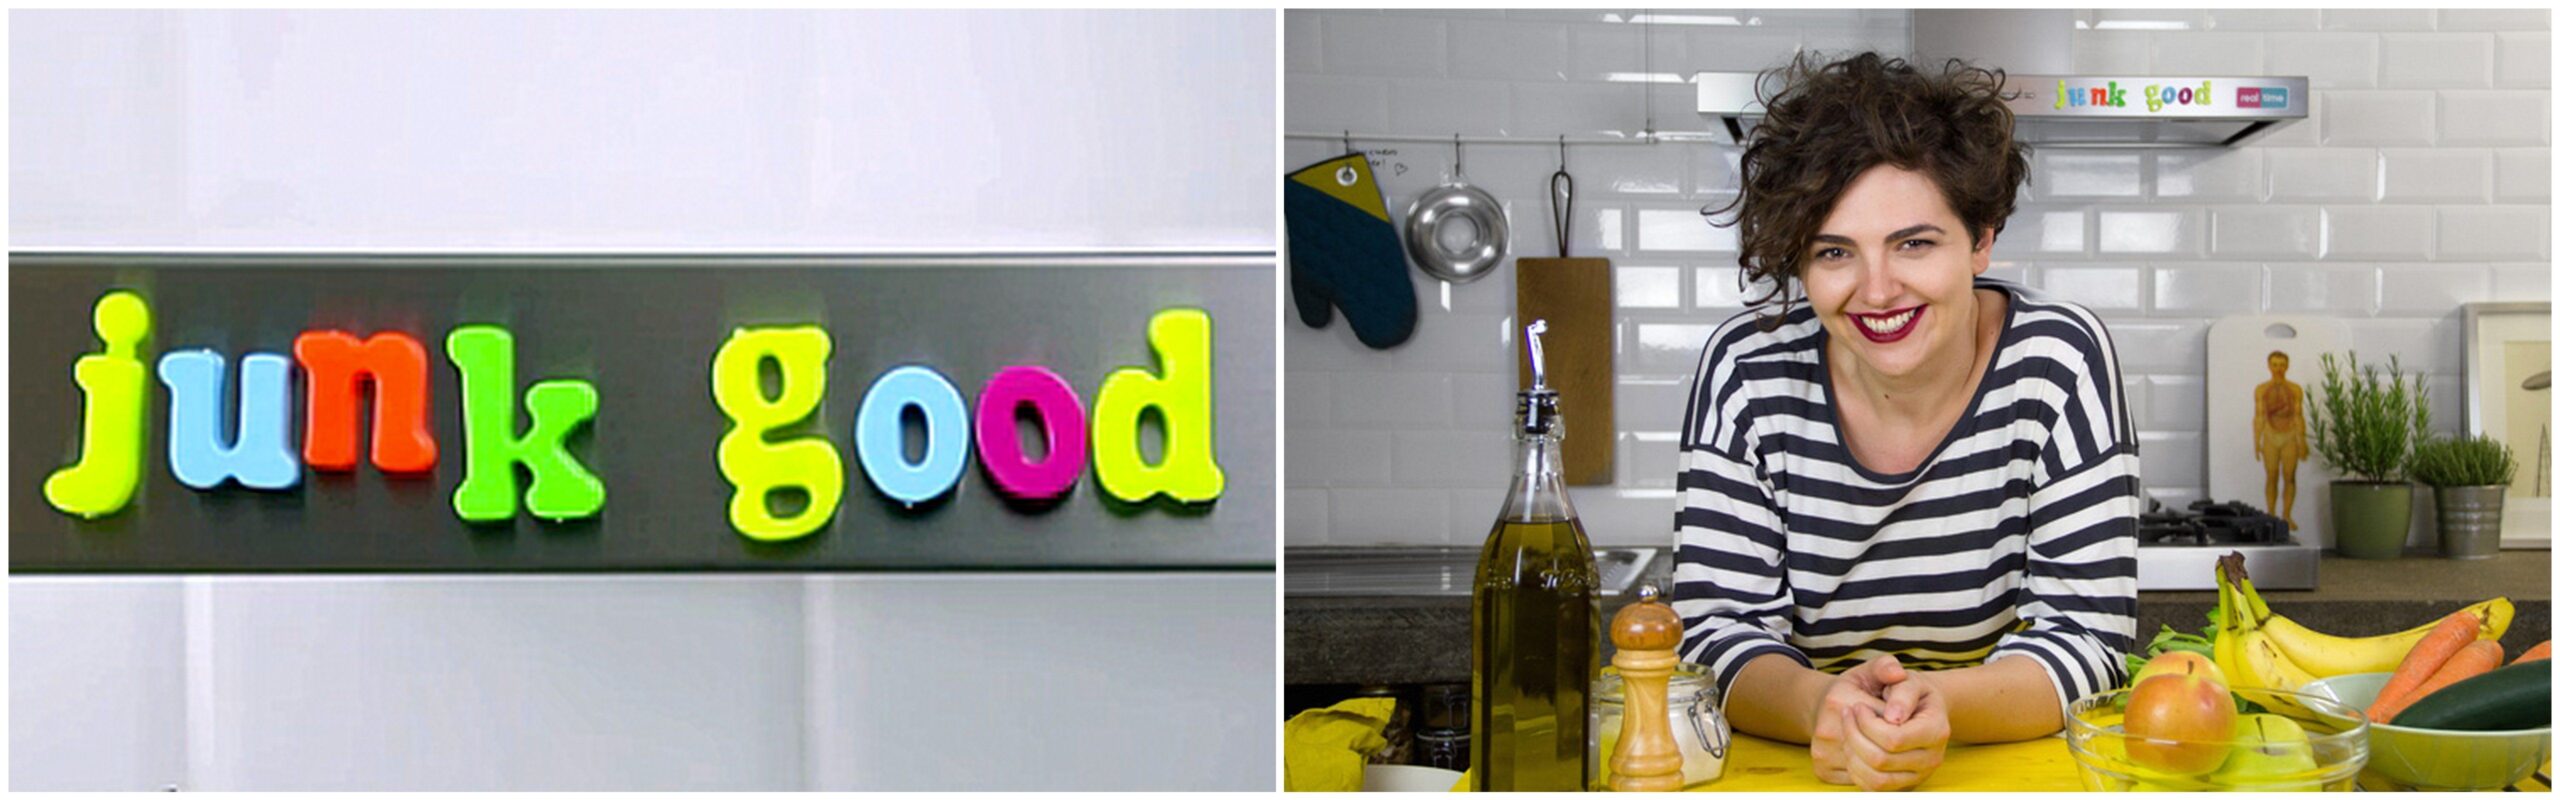 Junk Good: la webseries food sul "cibo spazzatura" in versione salutare